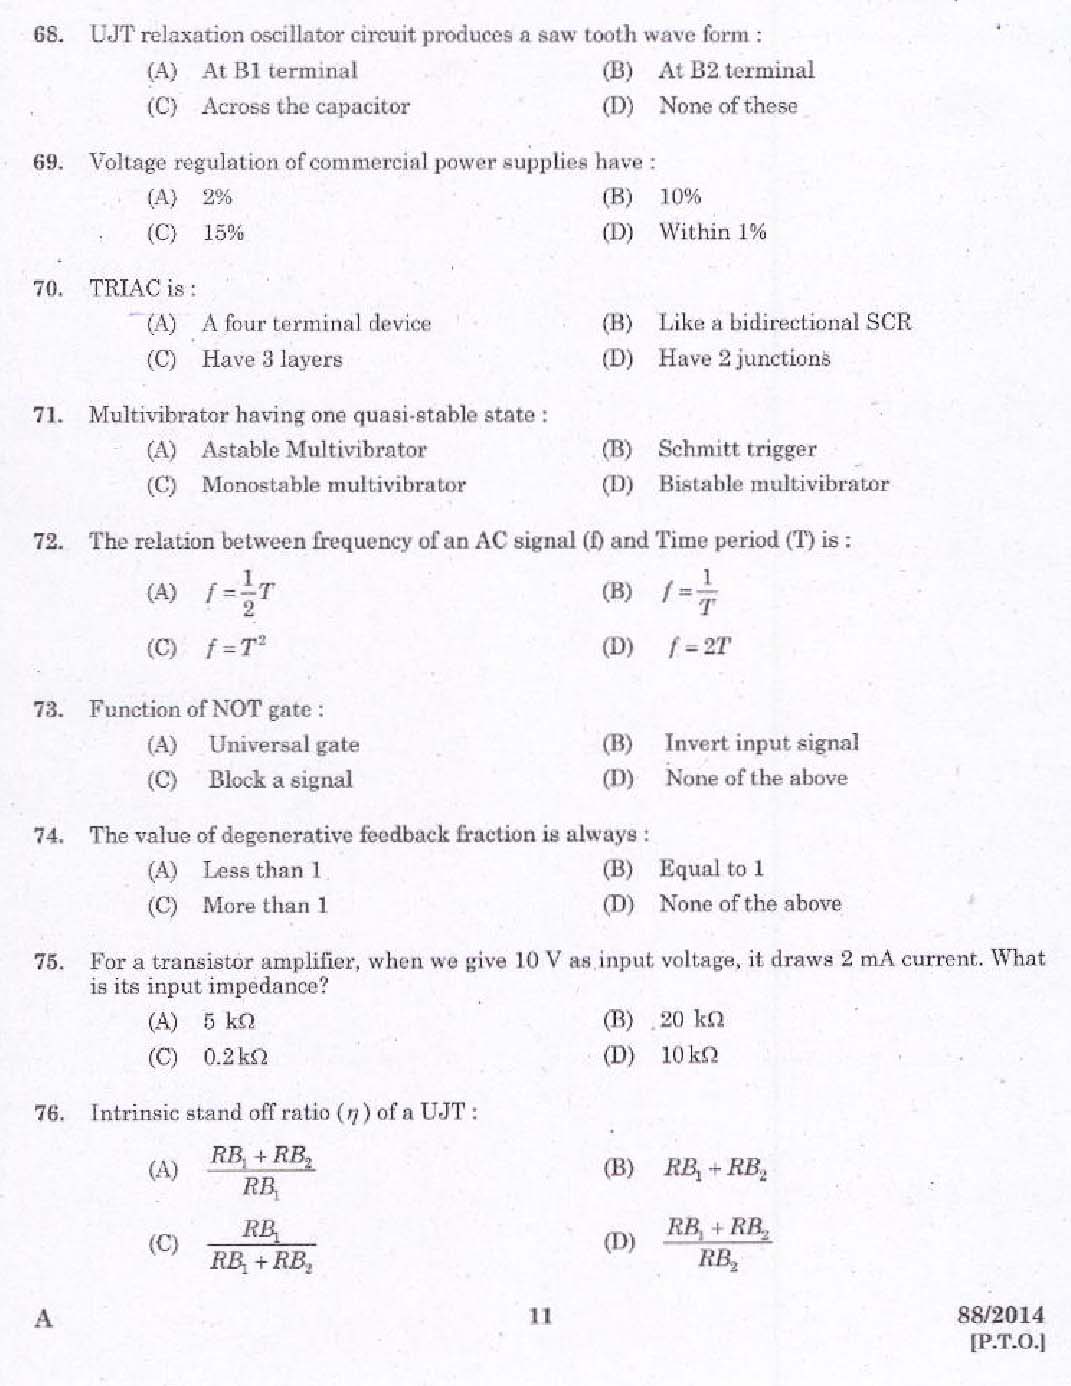 Kerala PSC Junior Instructor Exam Question Paper Code 882014 9